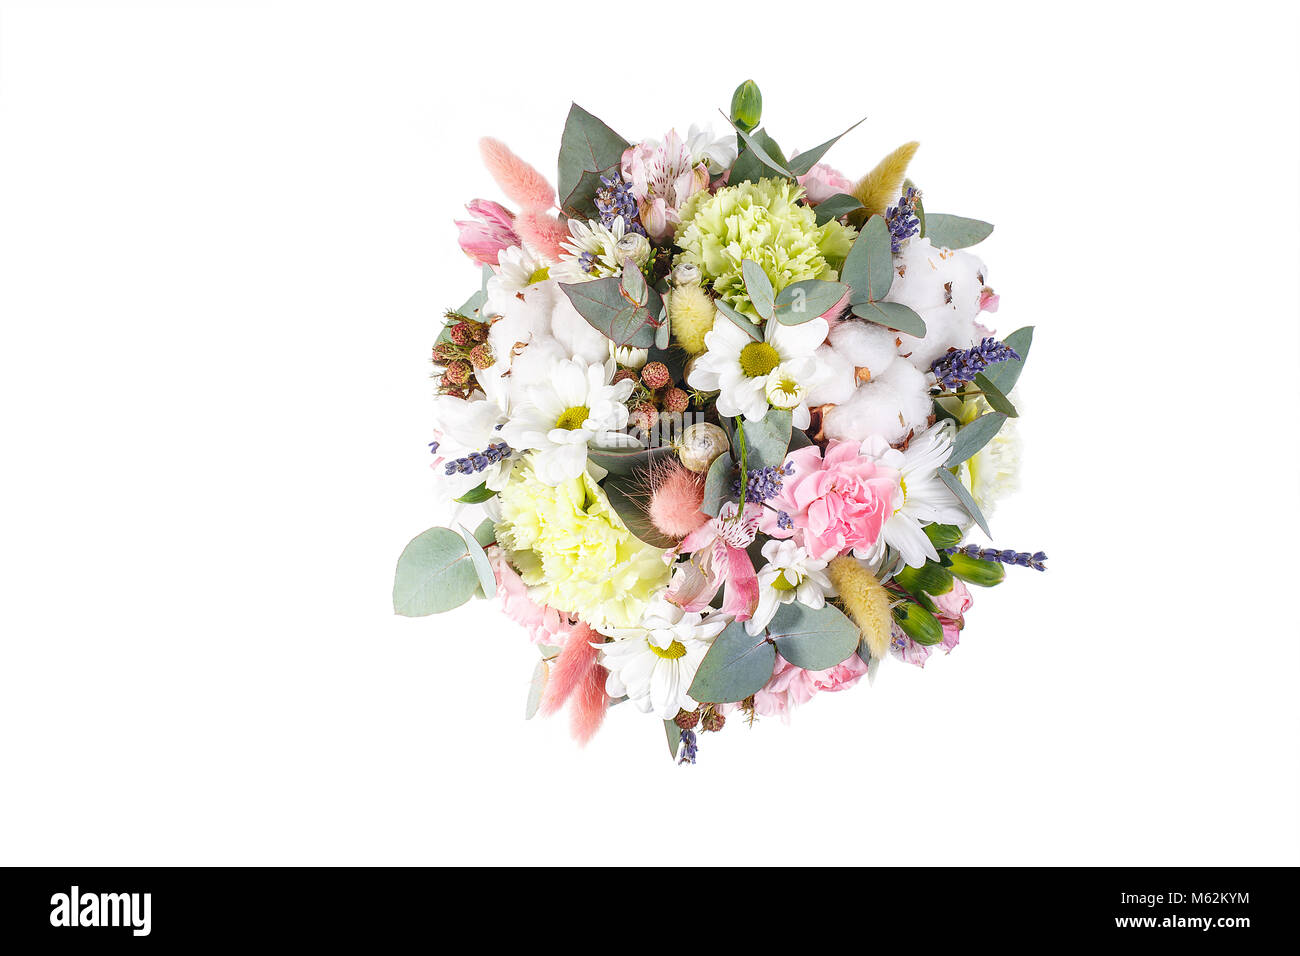 Strauß in einem Topf mit gelben, weissen Chrysanthemen, Kamille, Eukalyptus, Lavendel, Baumwolle, Eustoma, Nelken. Ein Urlaub, ein Geschenk für eine Frau. Smart View Stockfoto